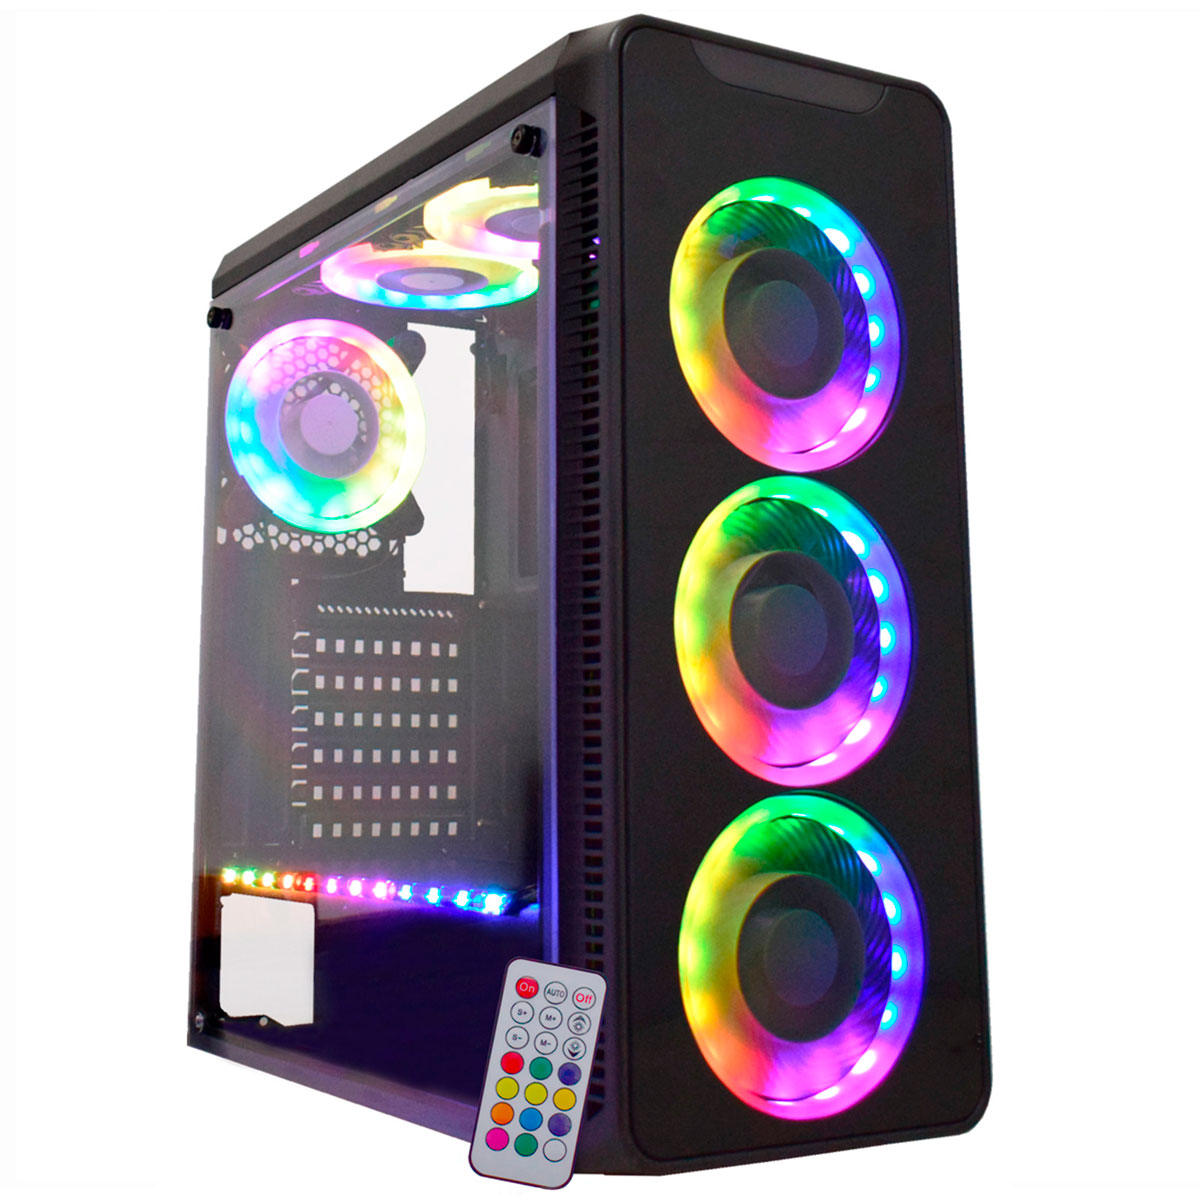 Gabinete Gamer K-Mex Infinity - Frontal em Vidro Temperado e Lateral em Acrílico - com 3 Coolers RGB e Fita RGB - com Controle Remoto - CG-10G8